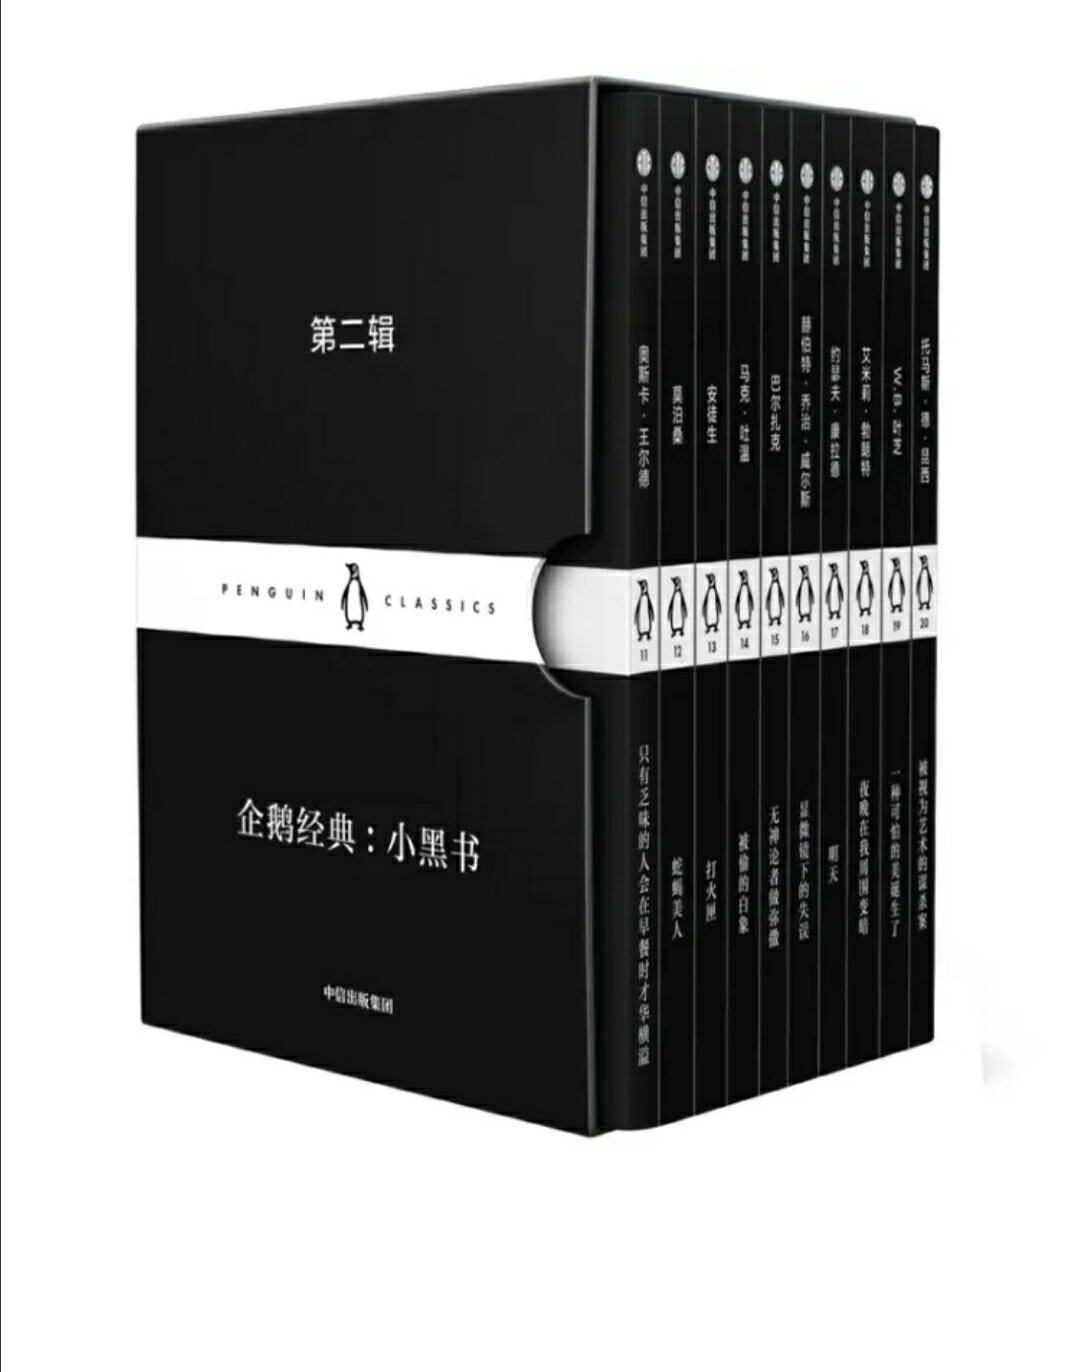 企鹅经典小黑书第二辑，中英文对照，一面是中文的，反过来从另一面打开是英文的，反之亦然。非常袖珍，携带方便